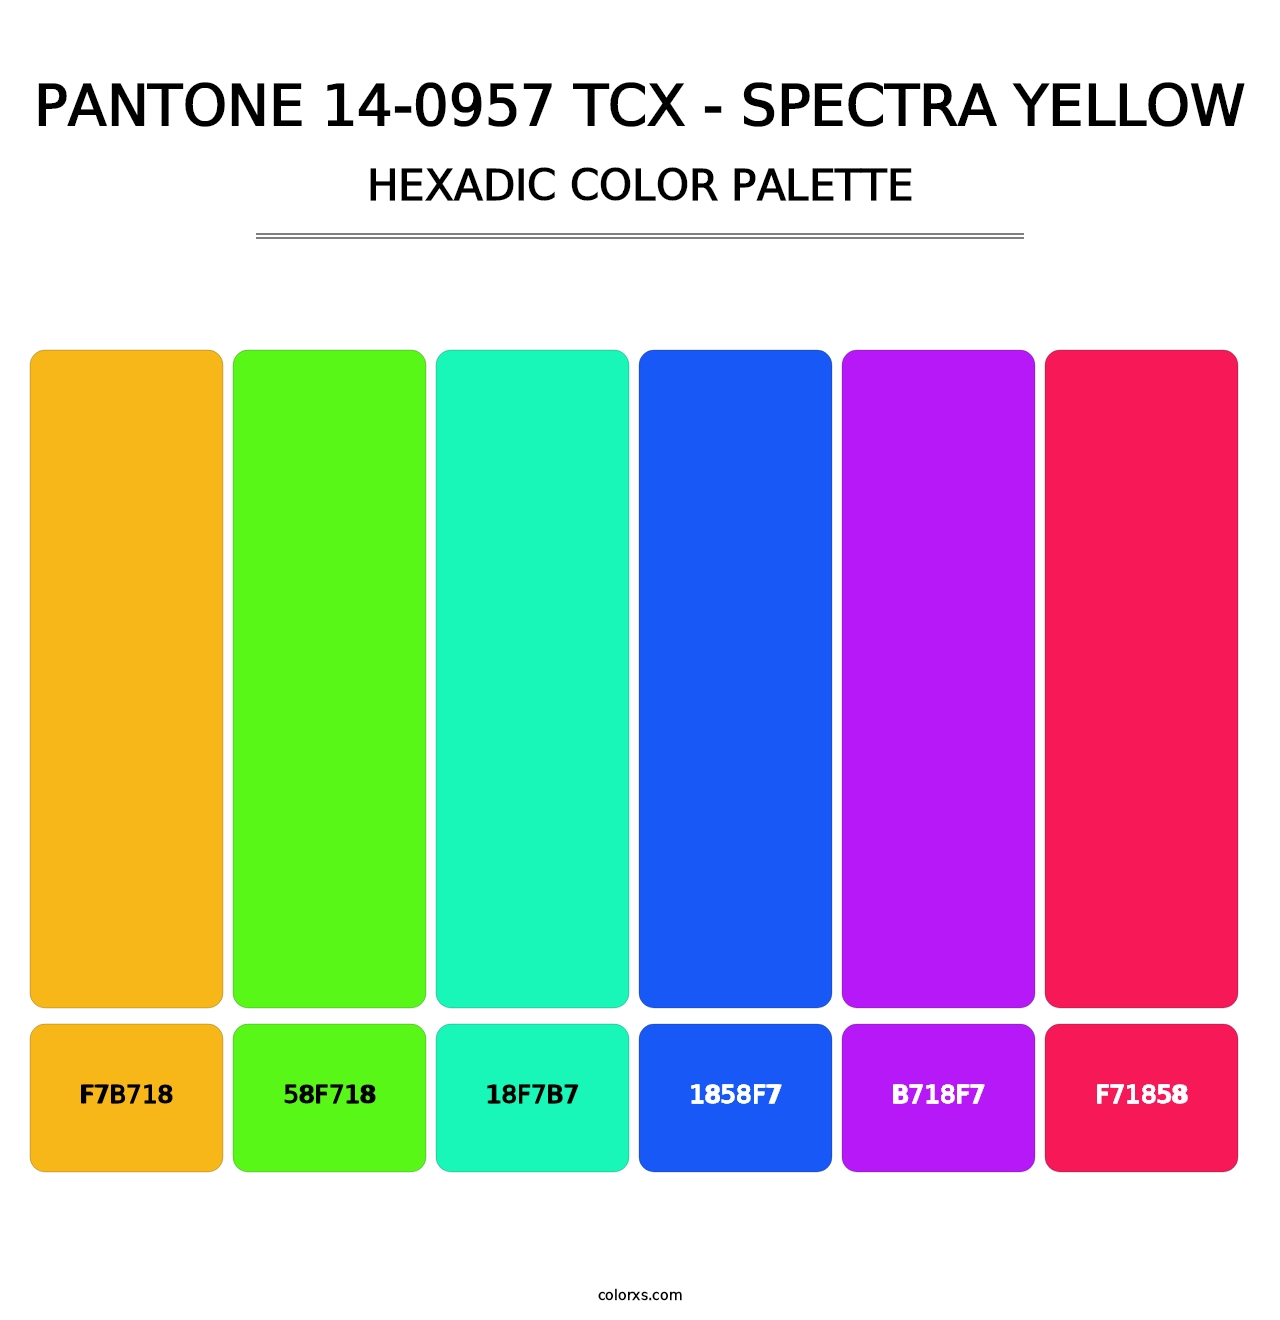 PANTONE 14-0957 TCX - Spectra Yellow - Hexadic Color Palette